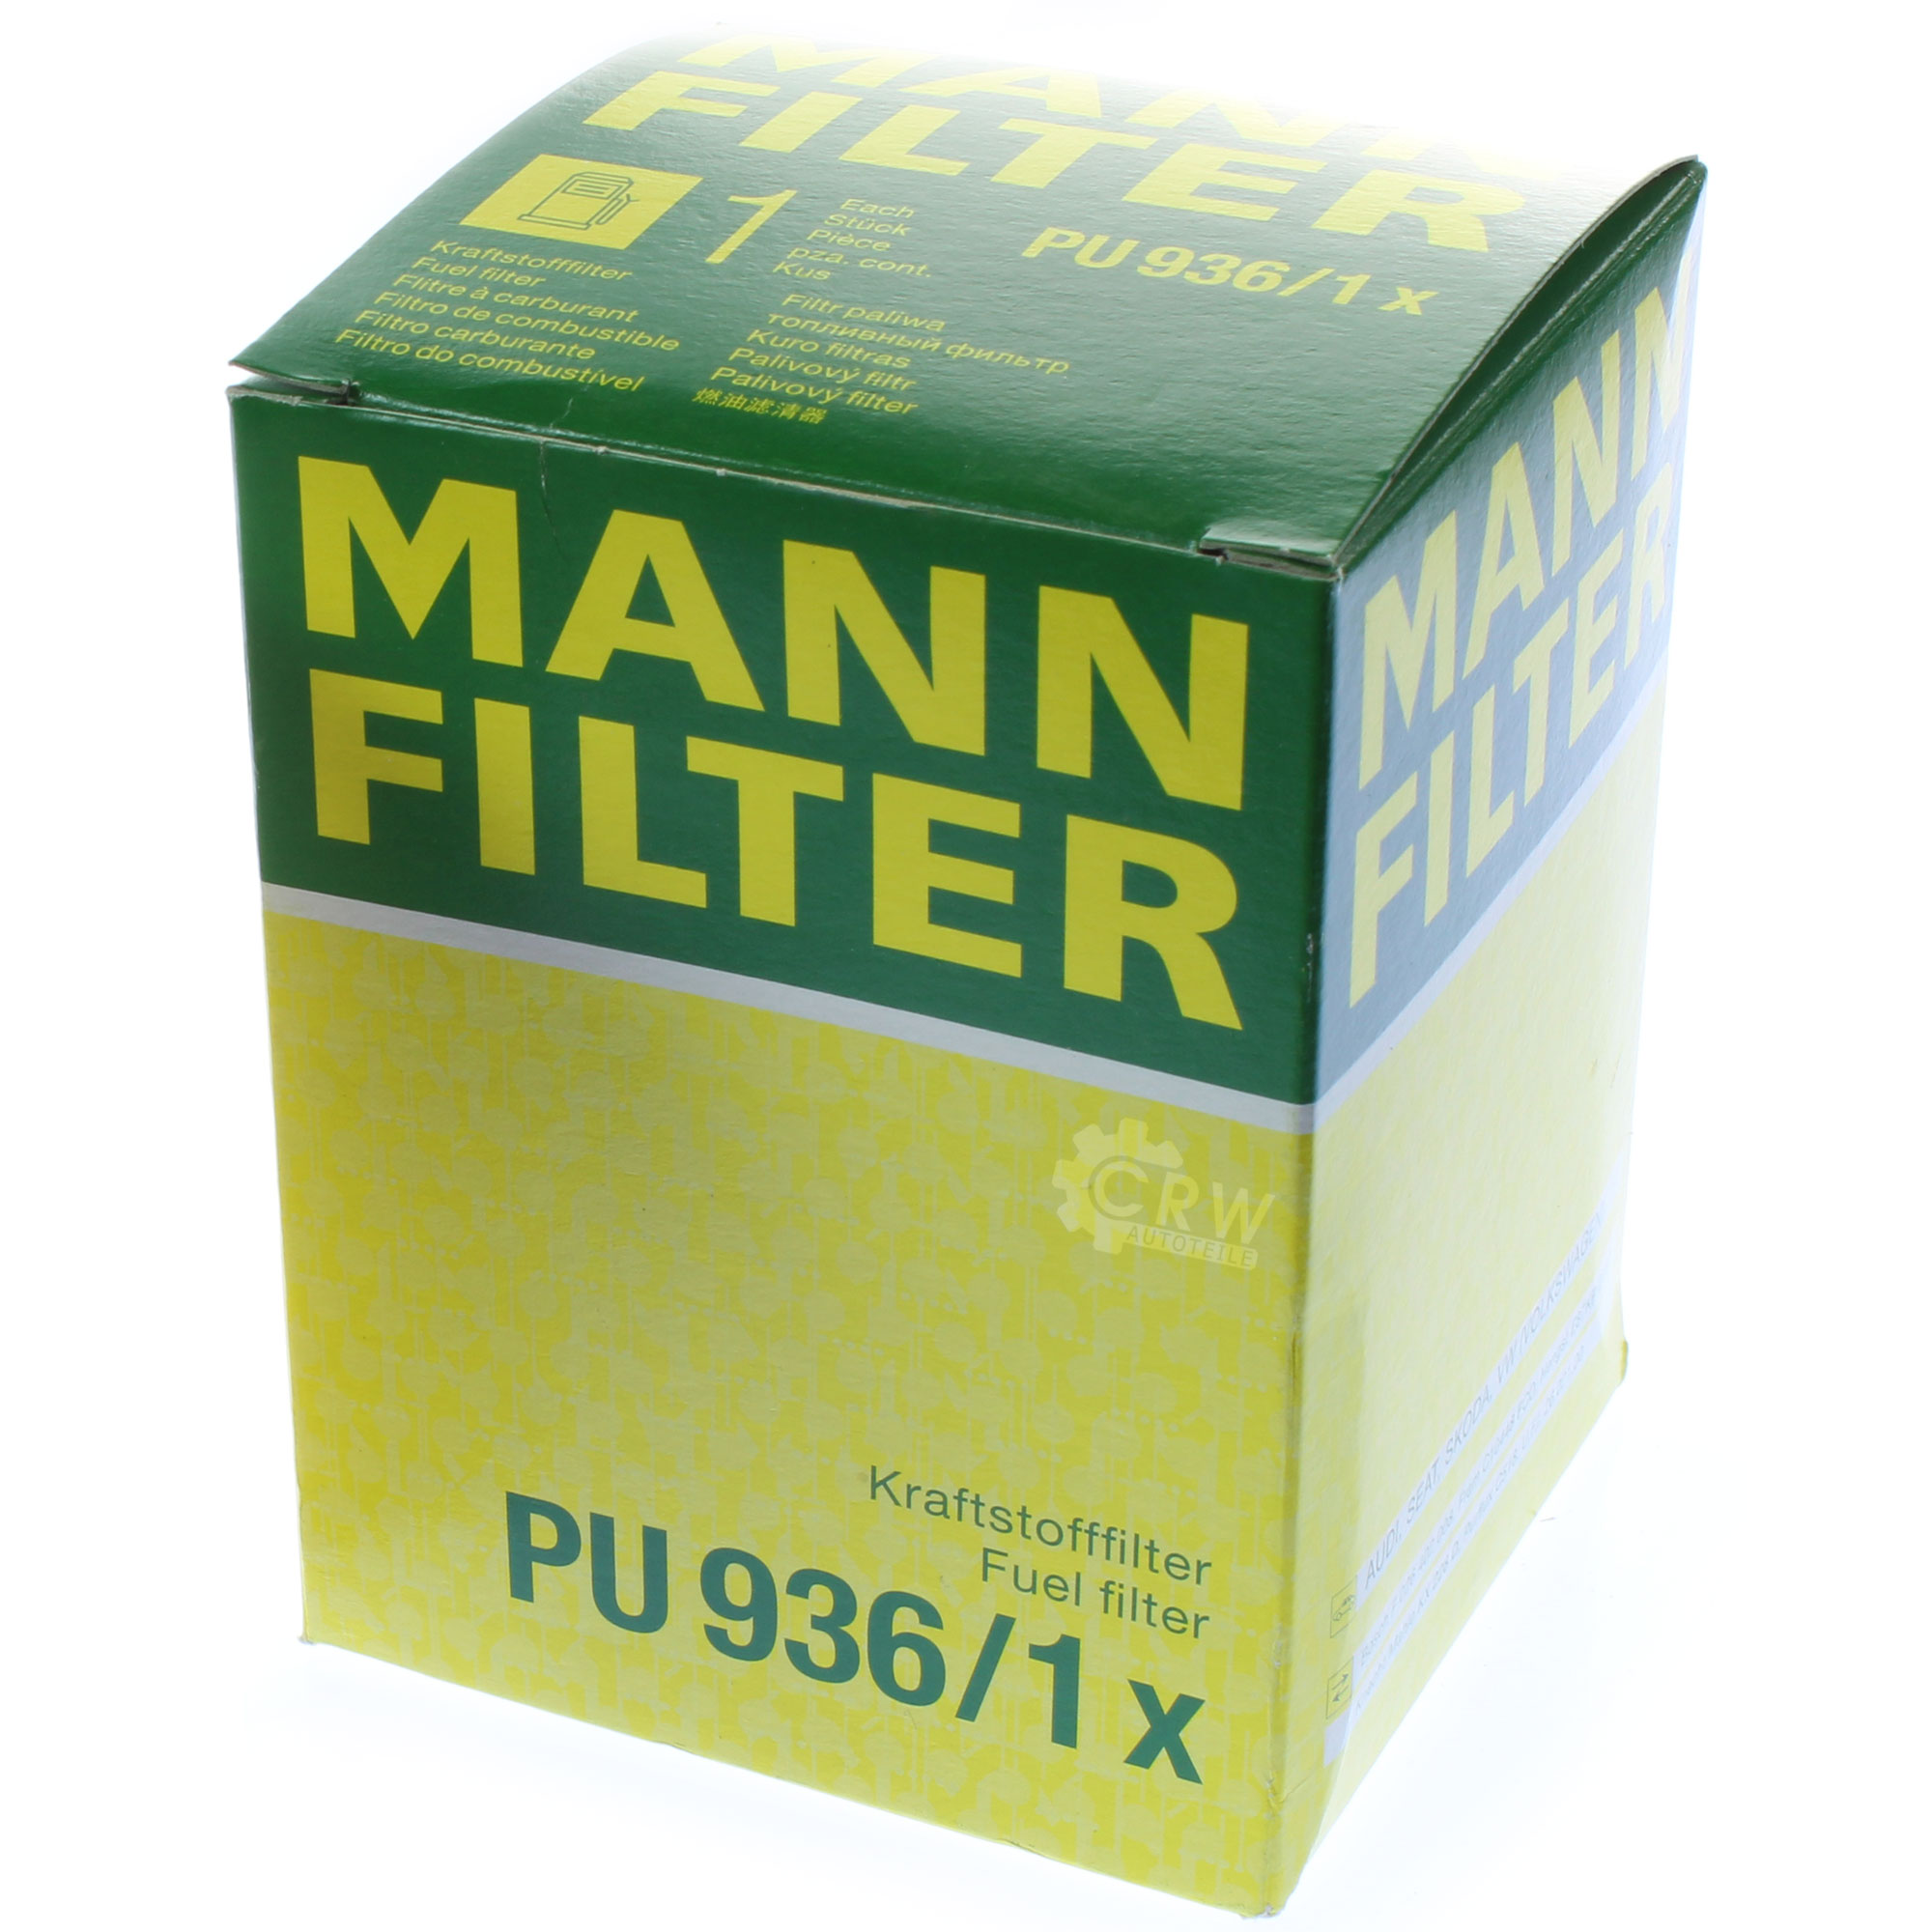 MANN-FILTER Kraftstofffilter PU 936/1 x Fuel Filter